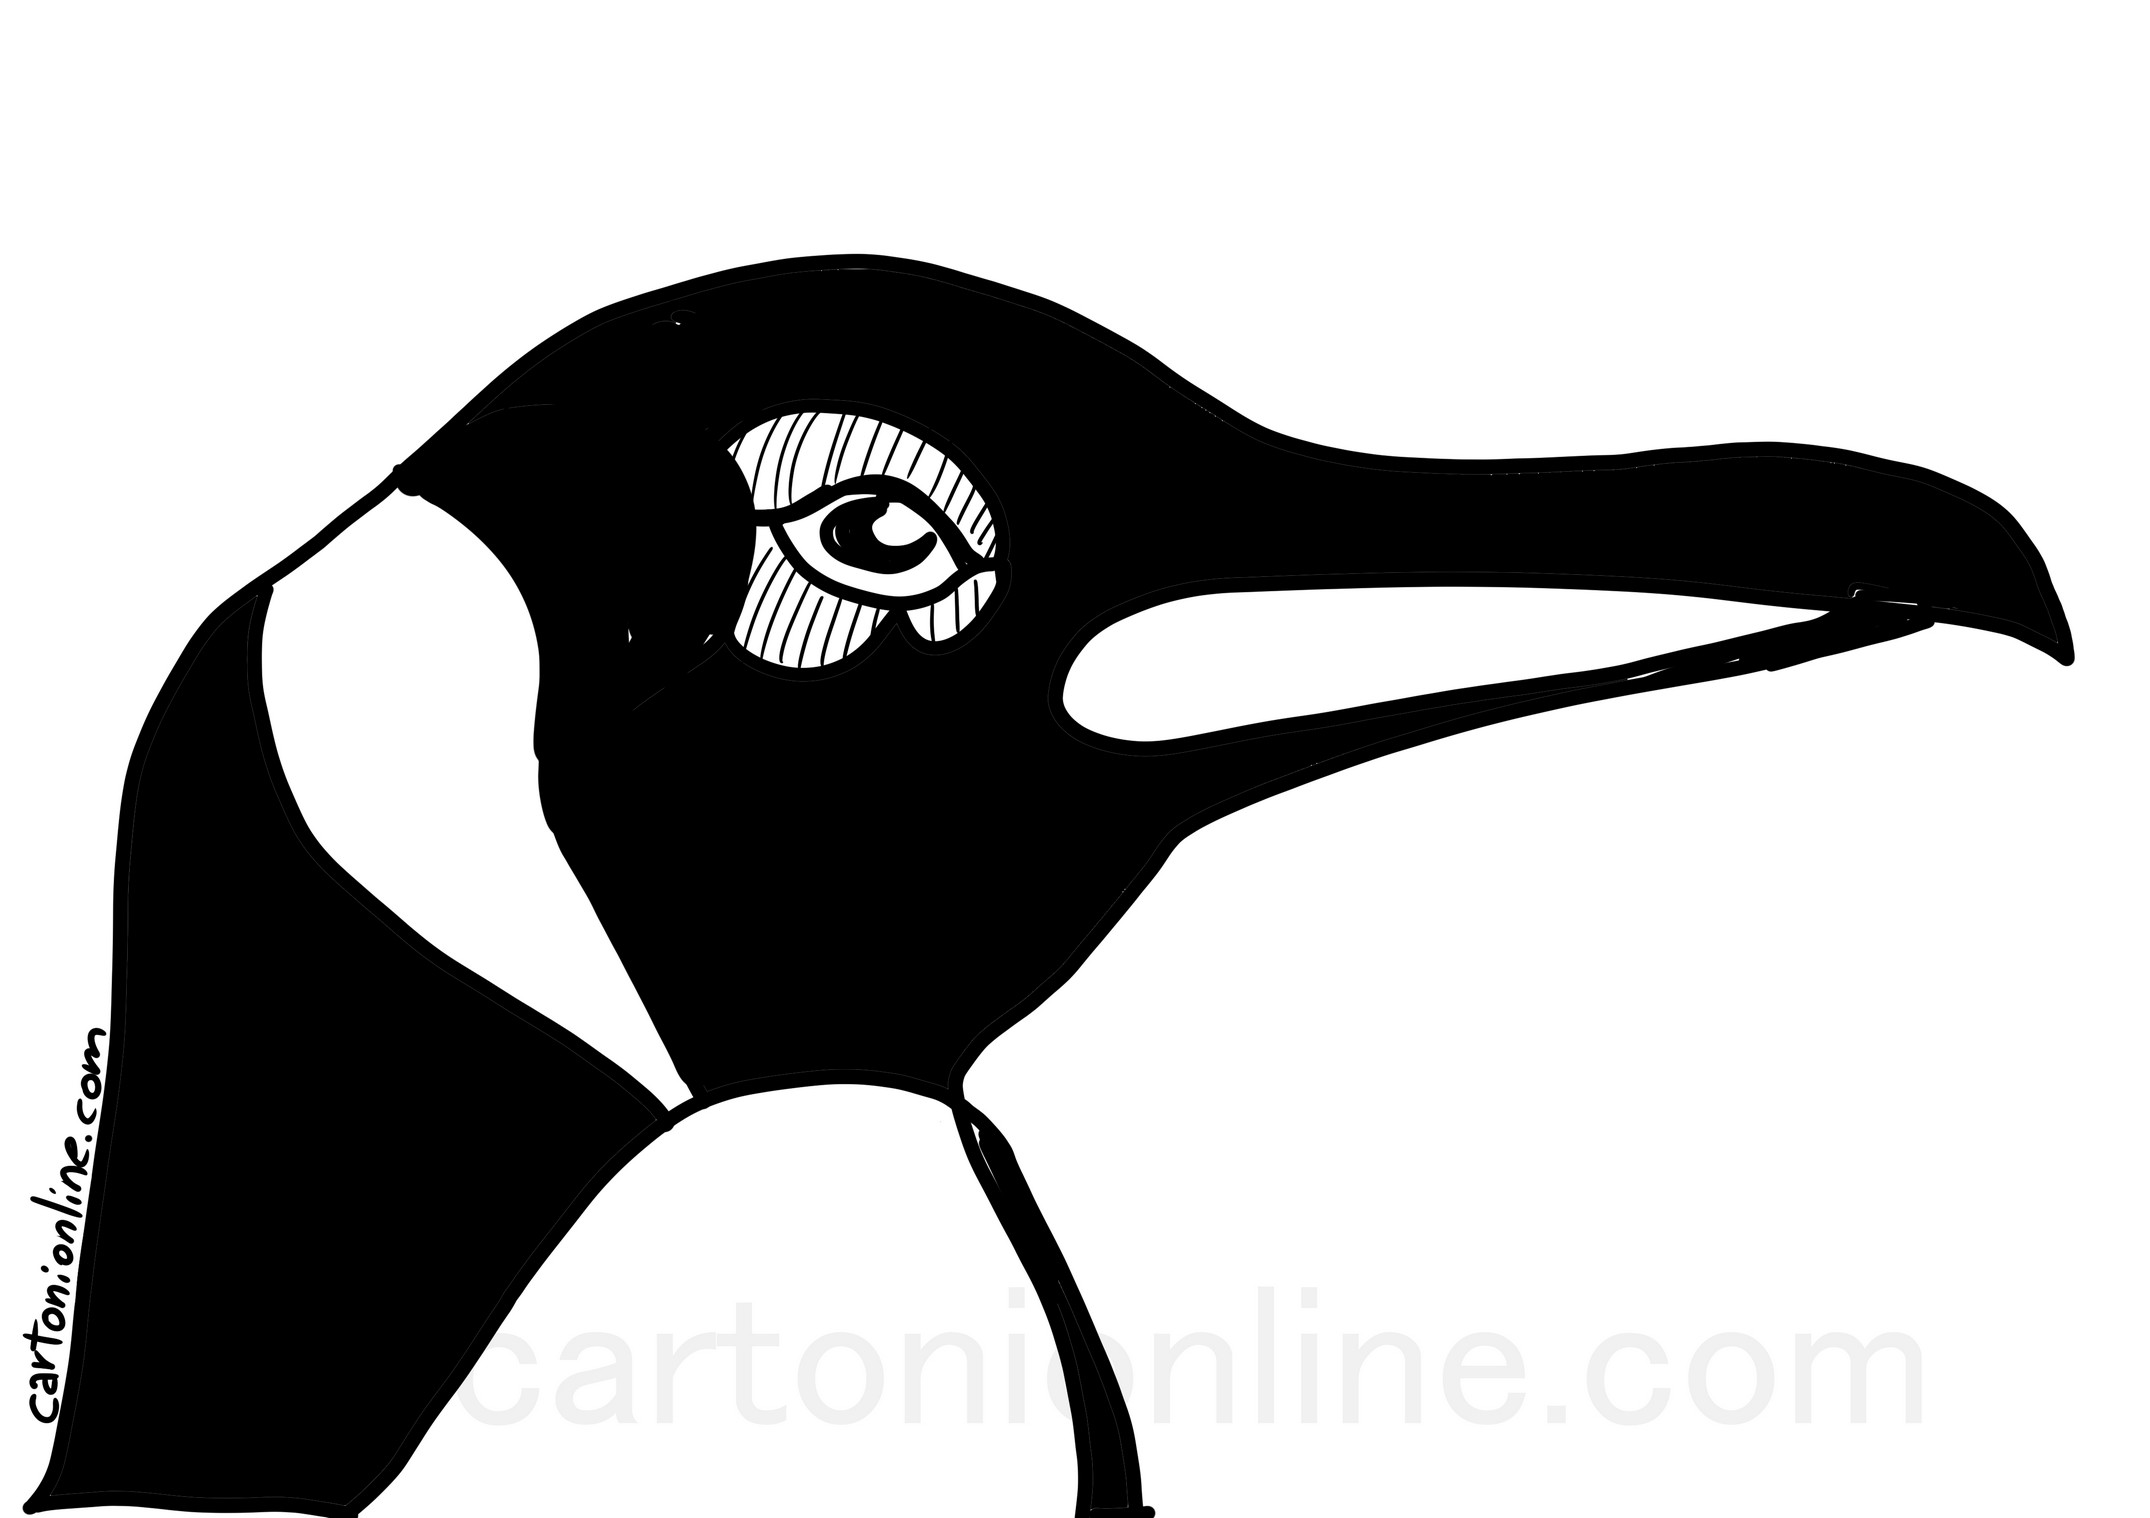 Pagina de colorat Pinguin realist